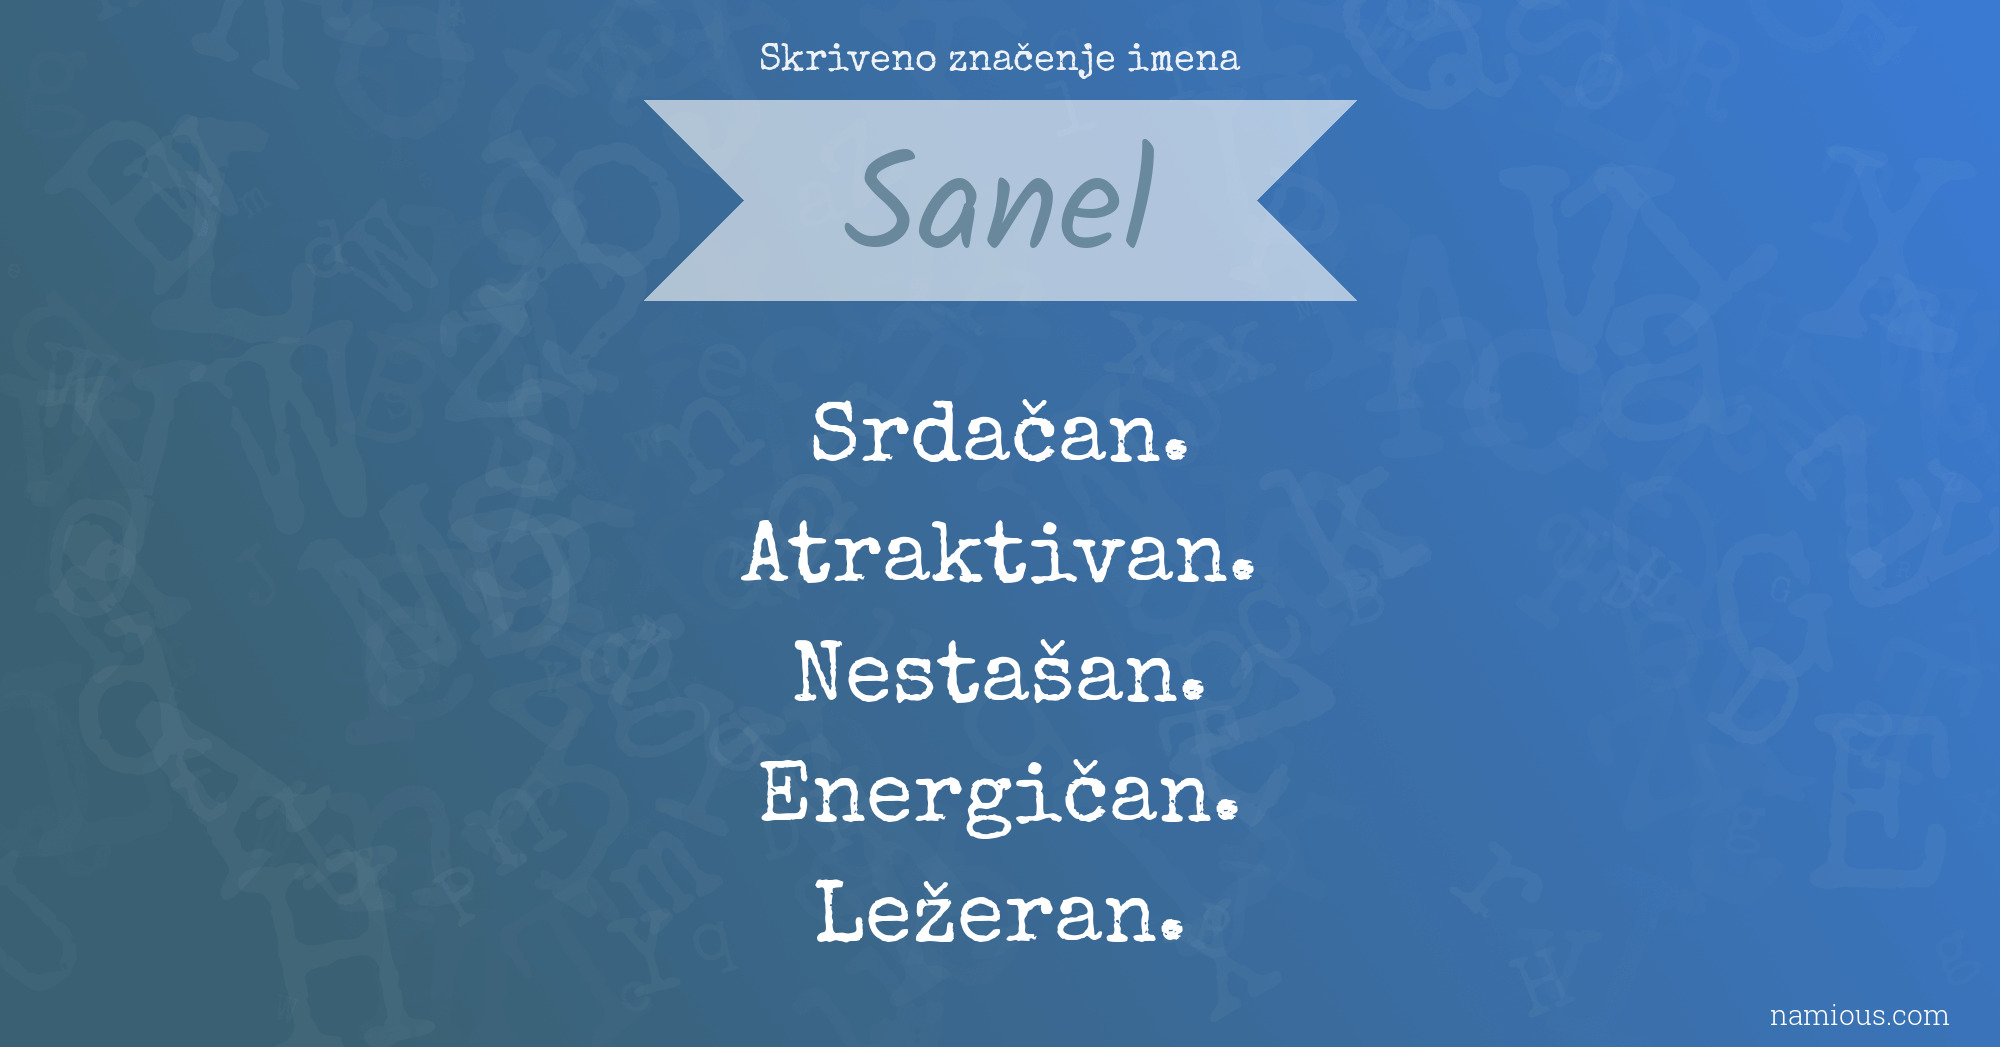 Skriveno značenje imena Sanel